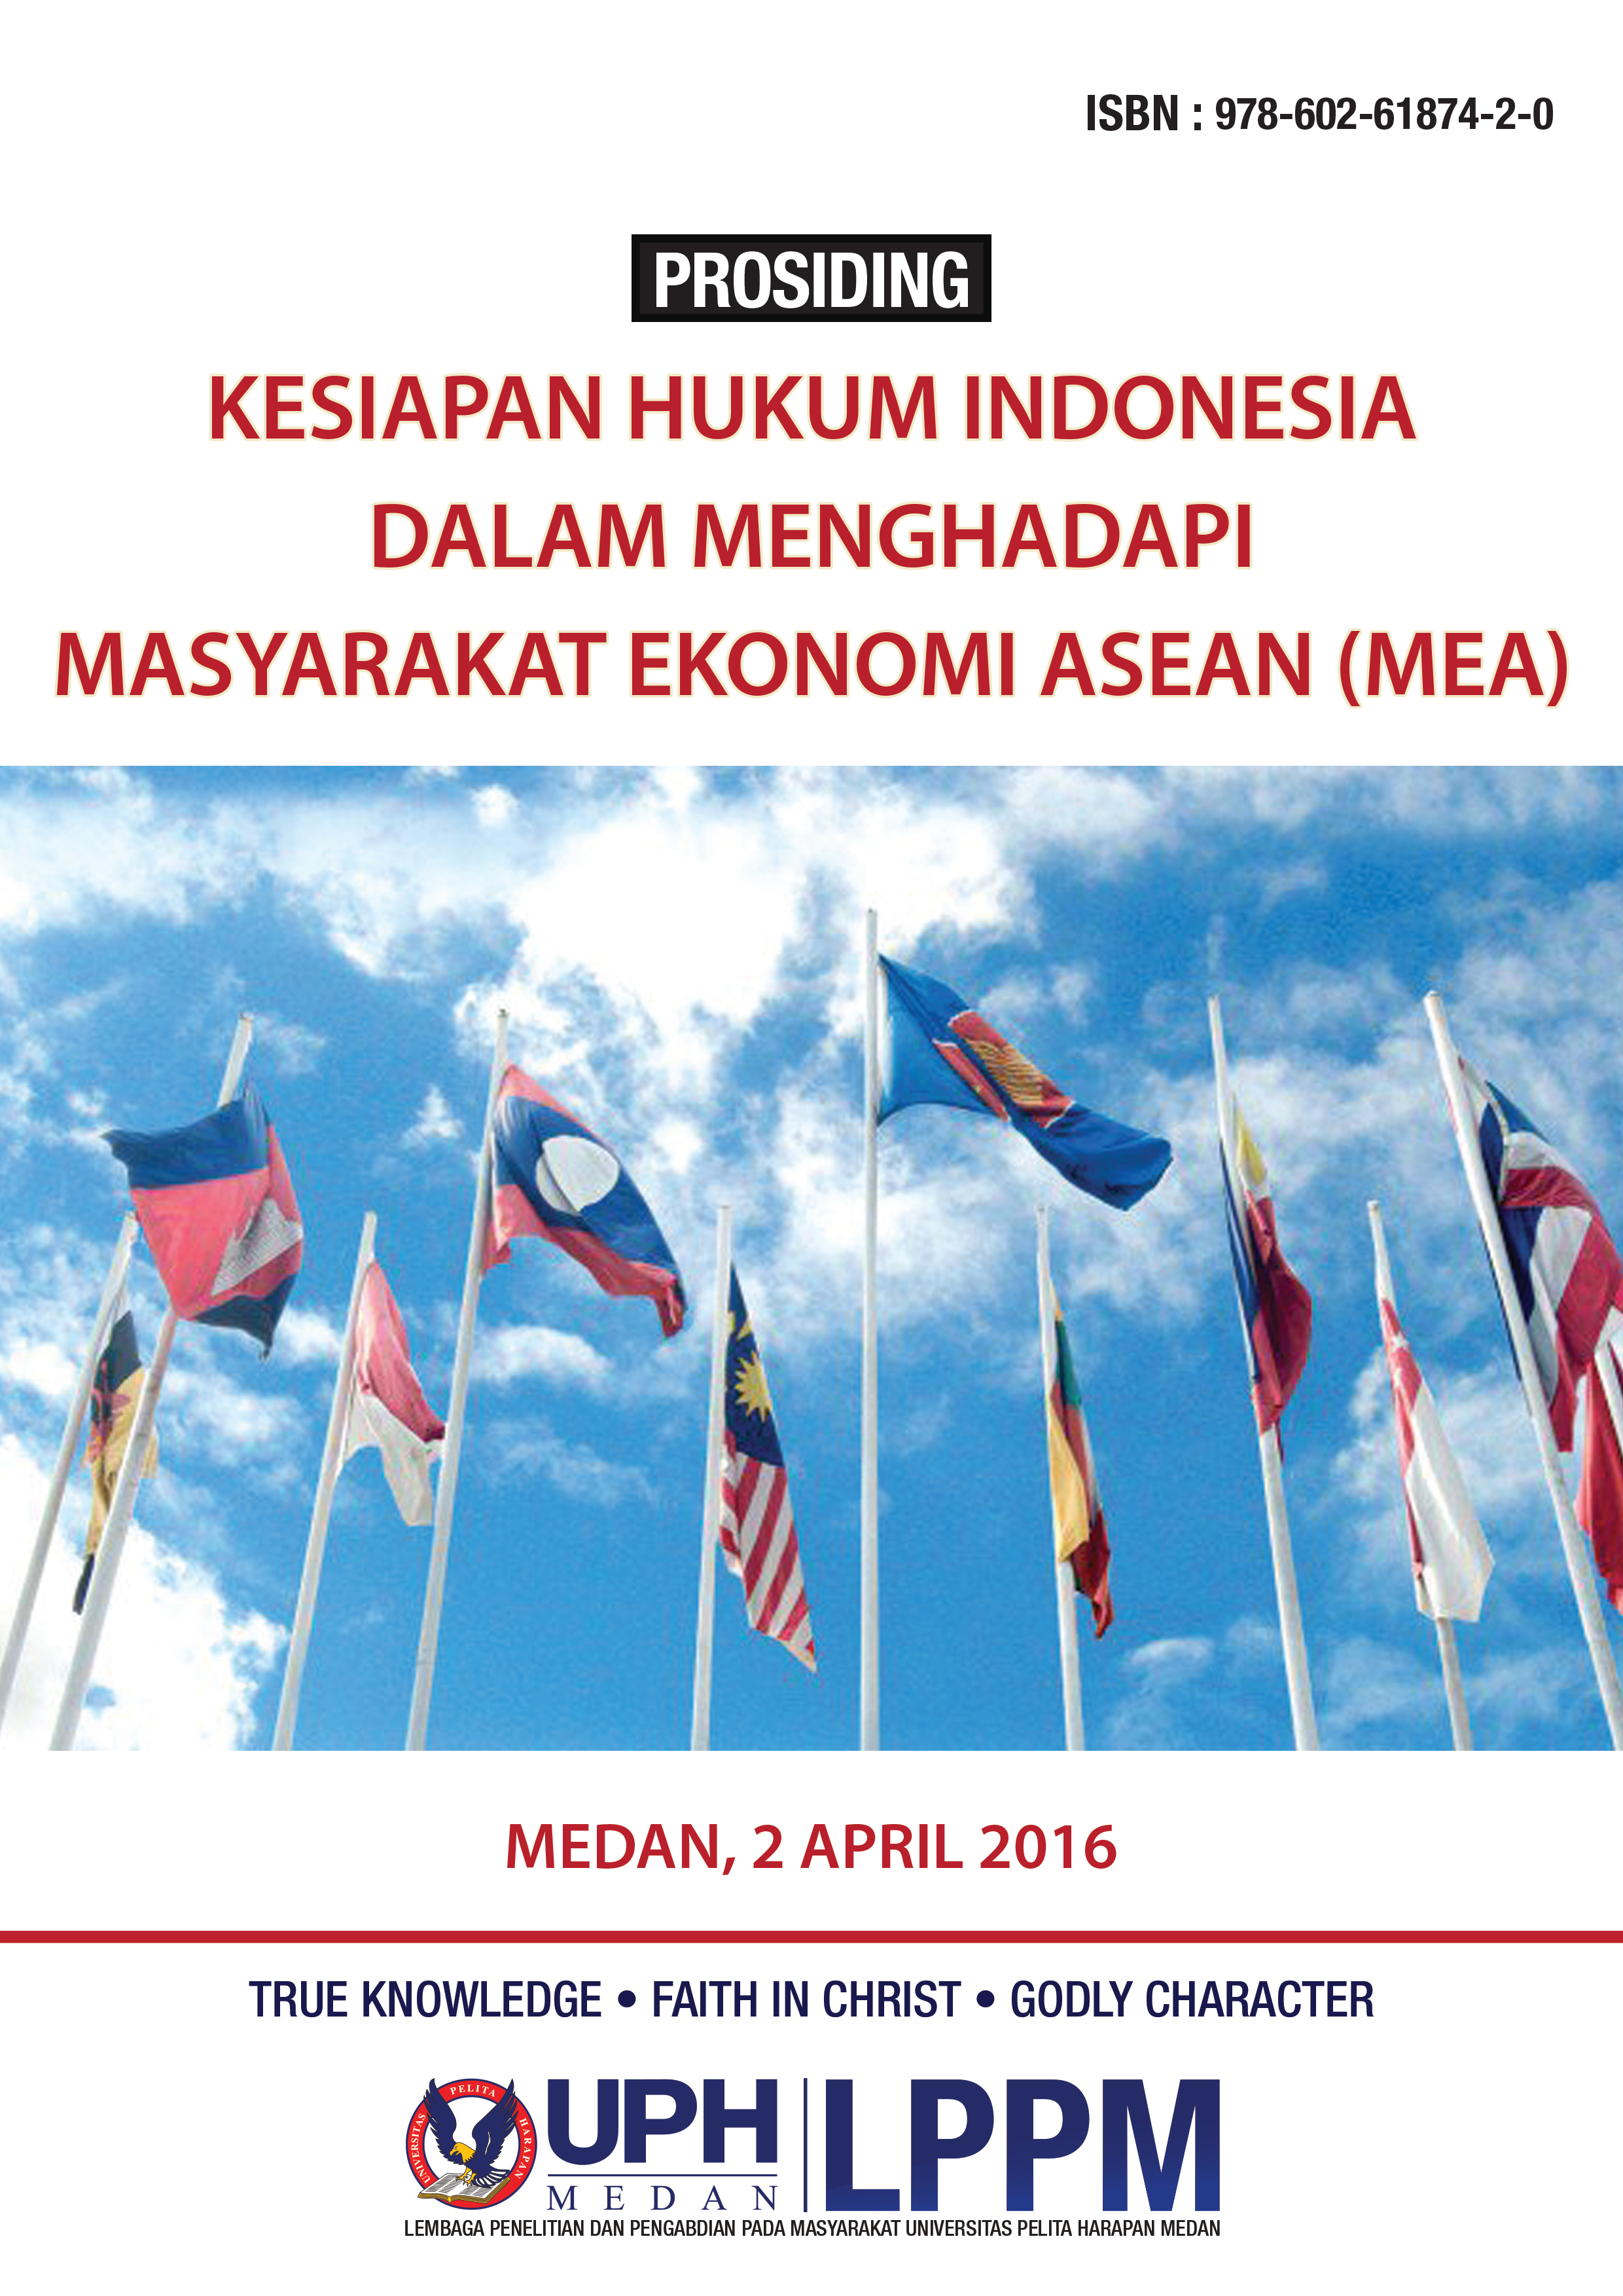 					View 2016: KESIAPAN HUKUM INDONESIA DALAM MENGHADAPI MASYARAKAT EKONOMI ASEAN (MEA)
				